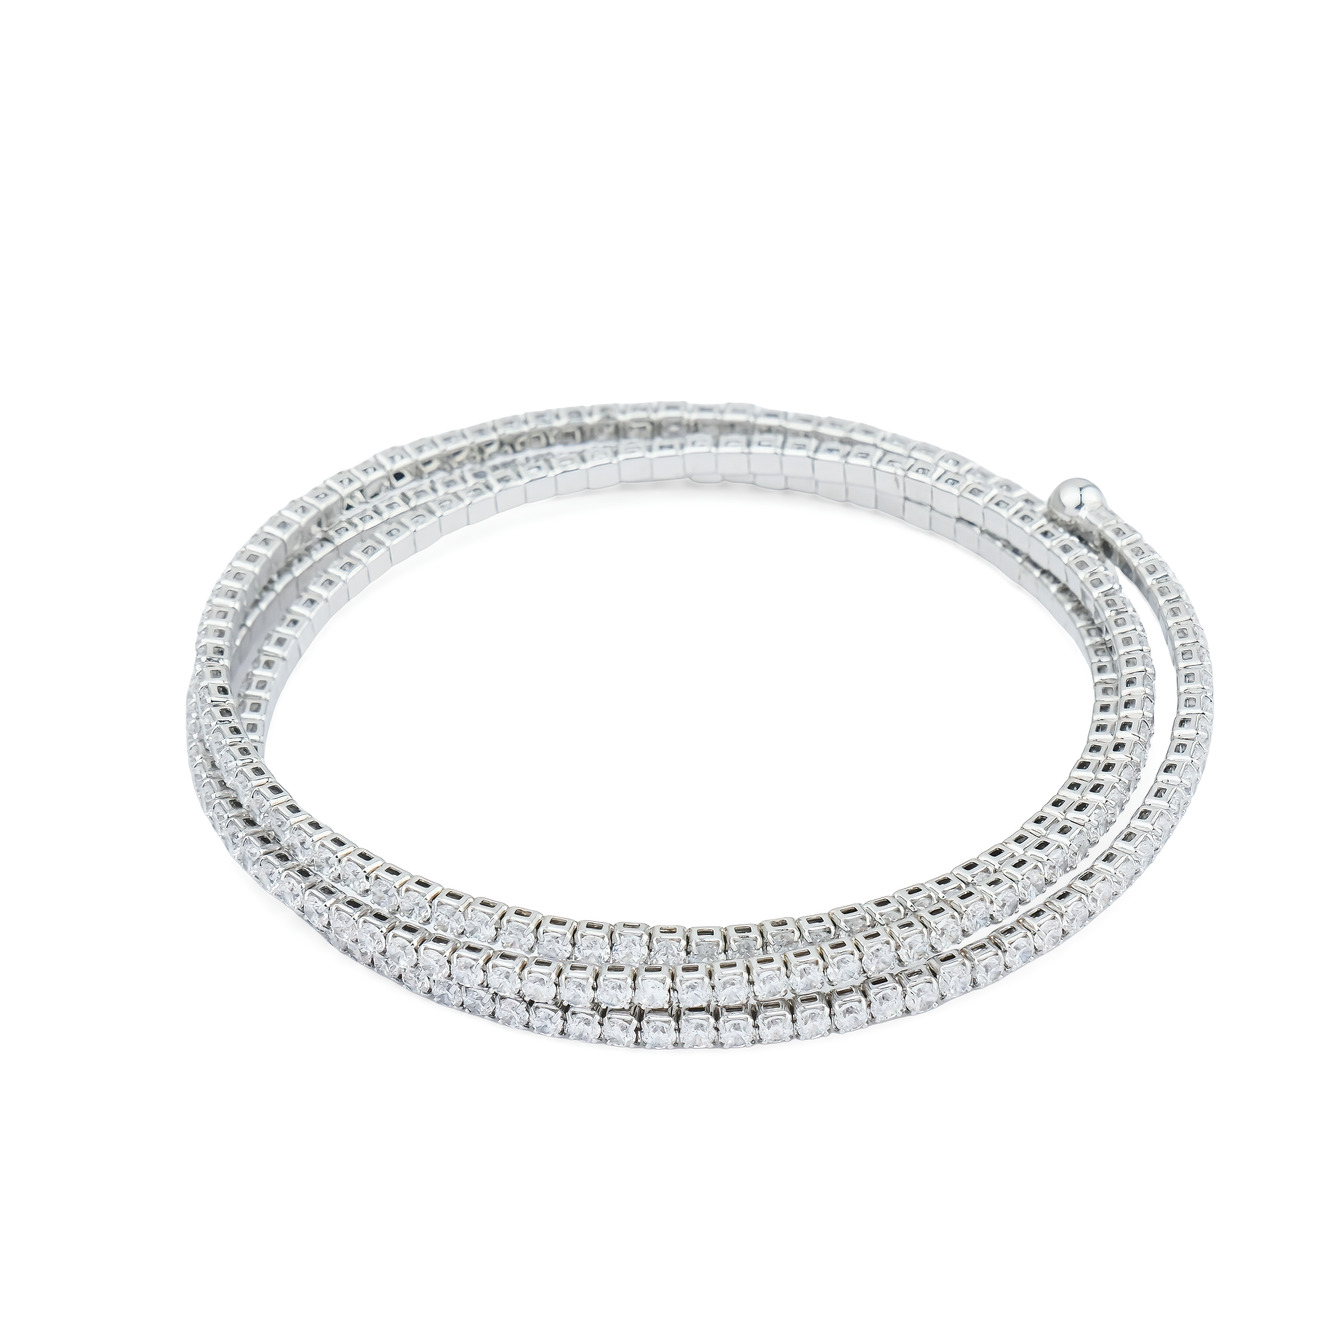 Herald Percy Серебристый многослойный браслет с кристаллами herald percy серебристый теннисный браслет с мелкими квадратными кристаллами